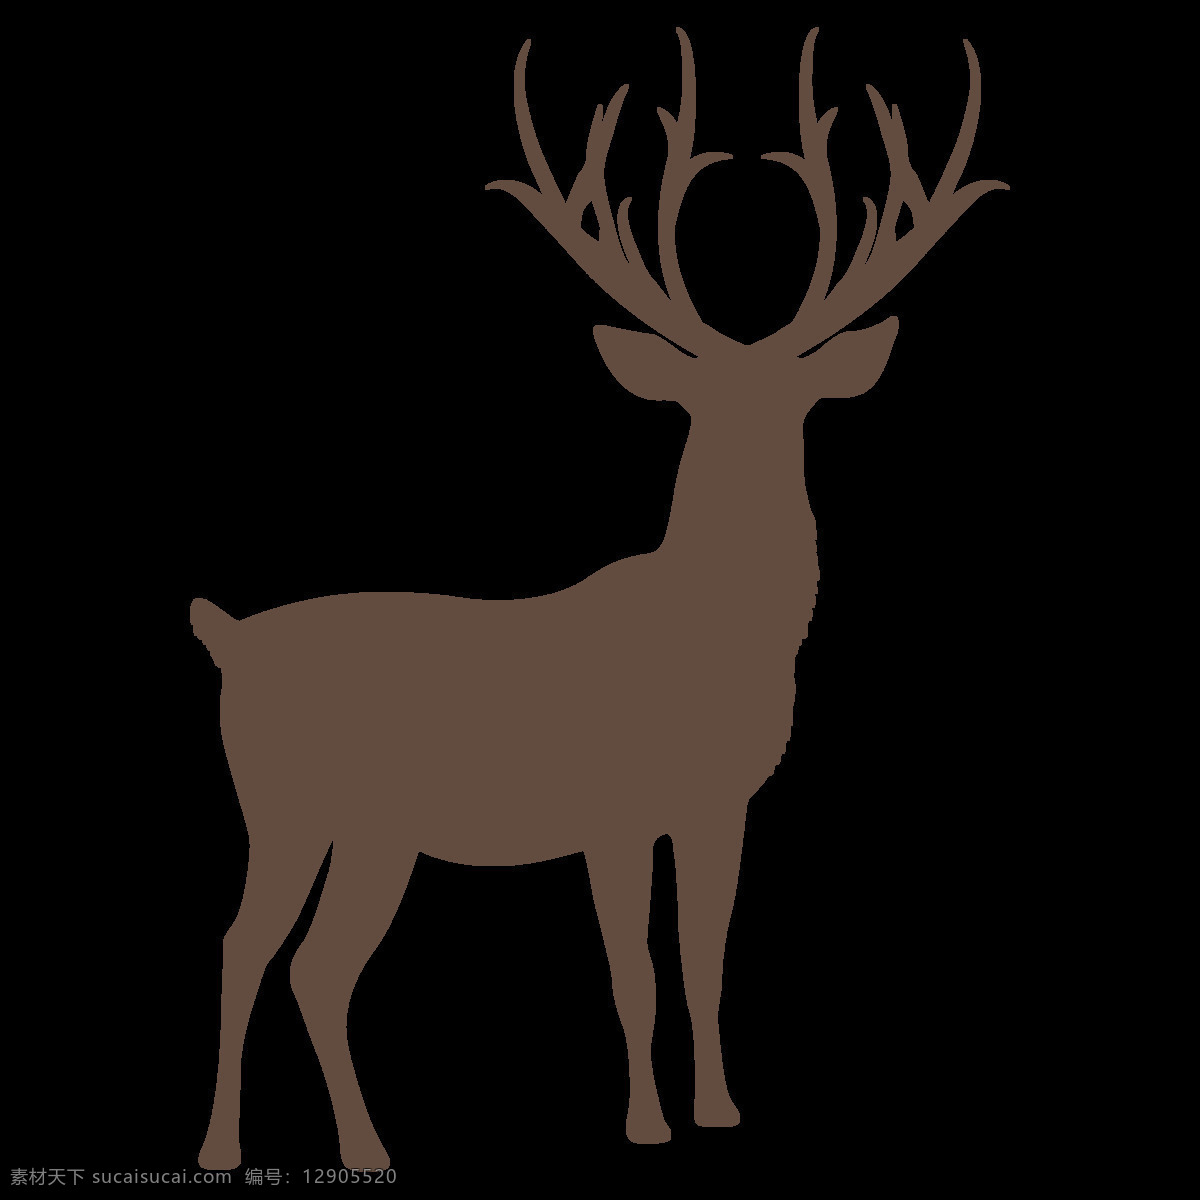 透明底鹿 鹿图片 卡通鹿 动物 卡通 梅花鹿 麋鹿图片 png图片 鹿茸 鹿角 鹿剪影